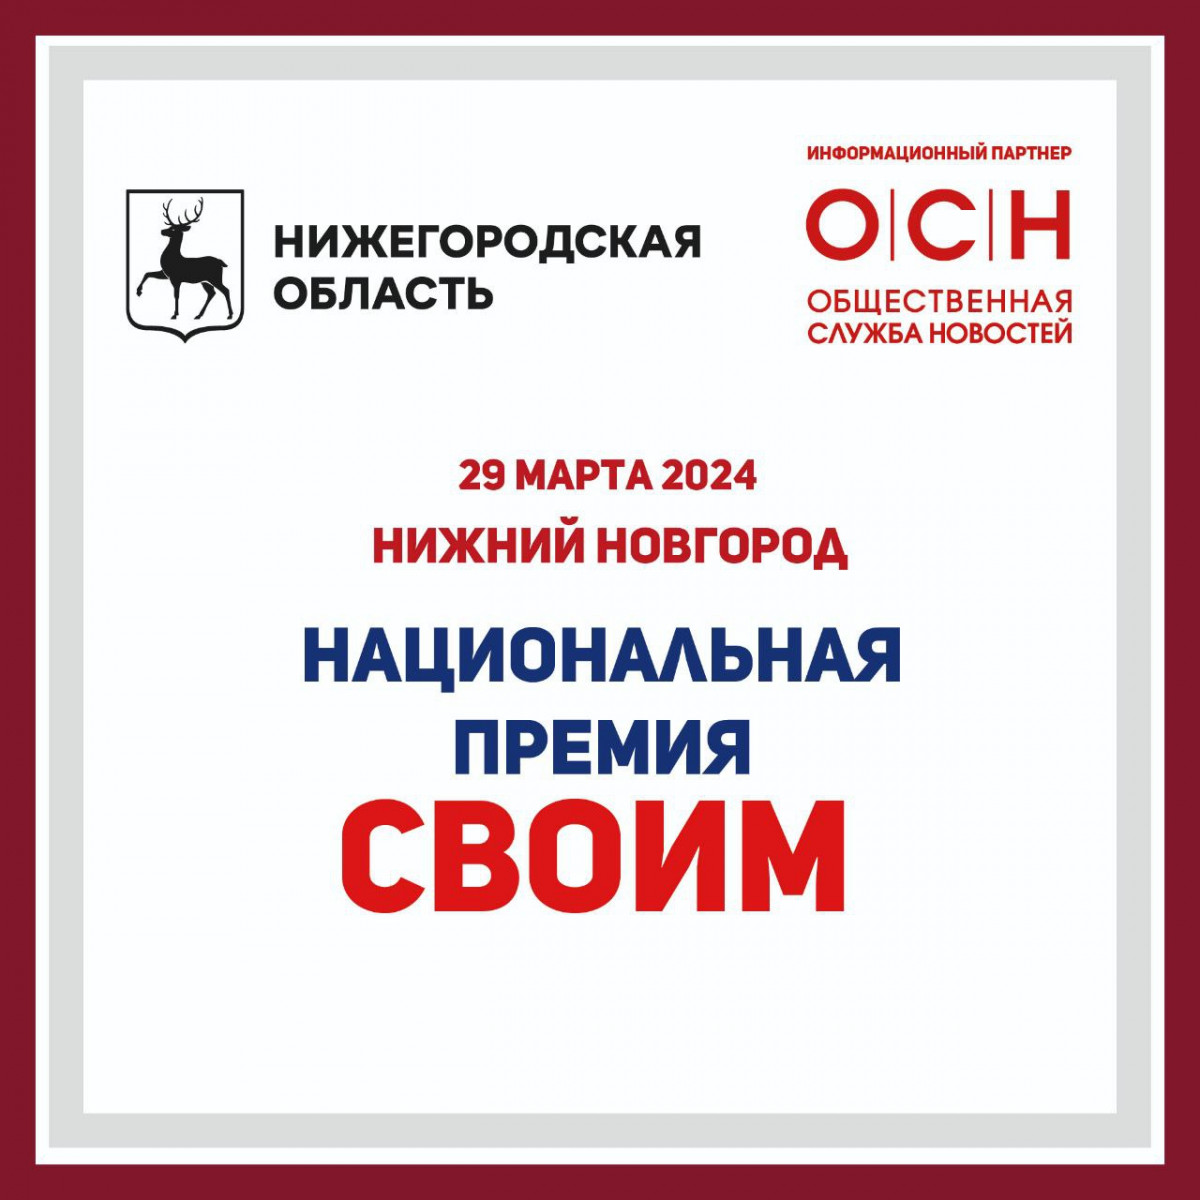 Федеральный тур Национальной премии «СВОИМ» стартует из Нижнего Новгорода 29 марта